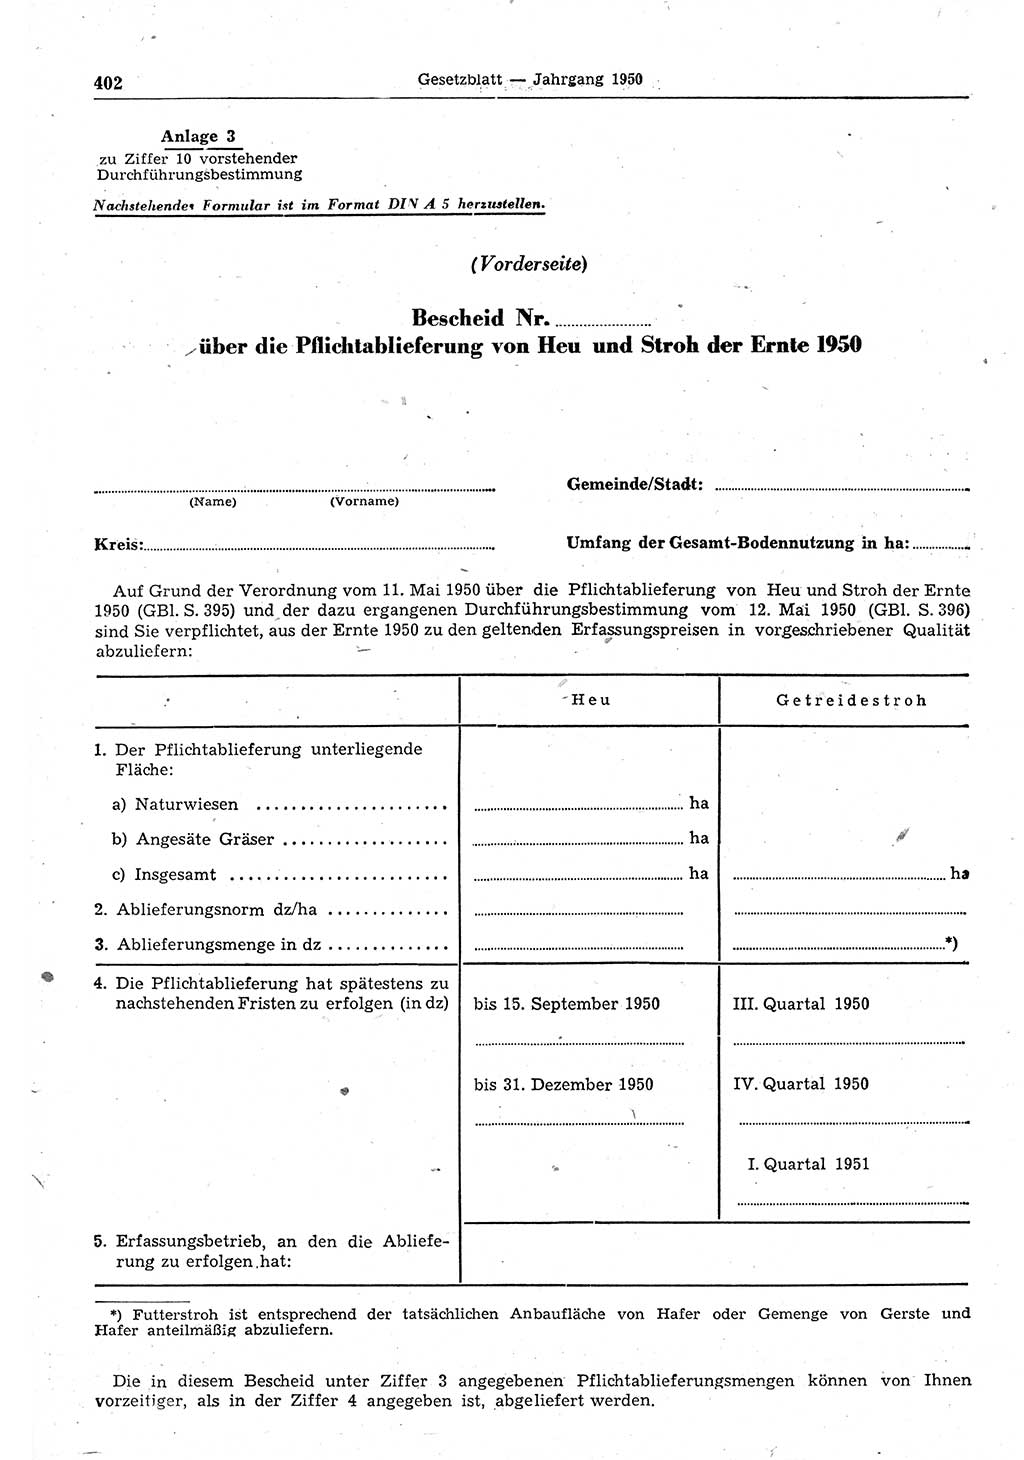 Gesetzblatt (GBl.) der Deutschen Demokratischen Republik (DDR) 1950, Seite 402 (GBl. DDR 1950, S. 402)